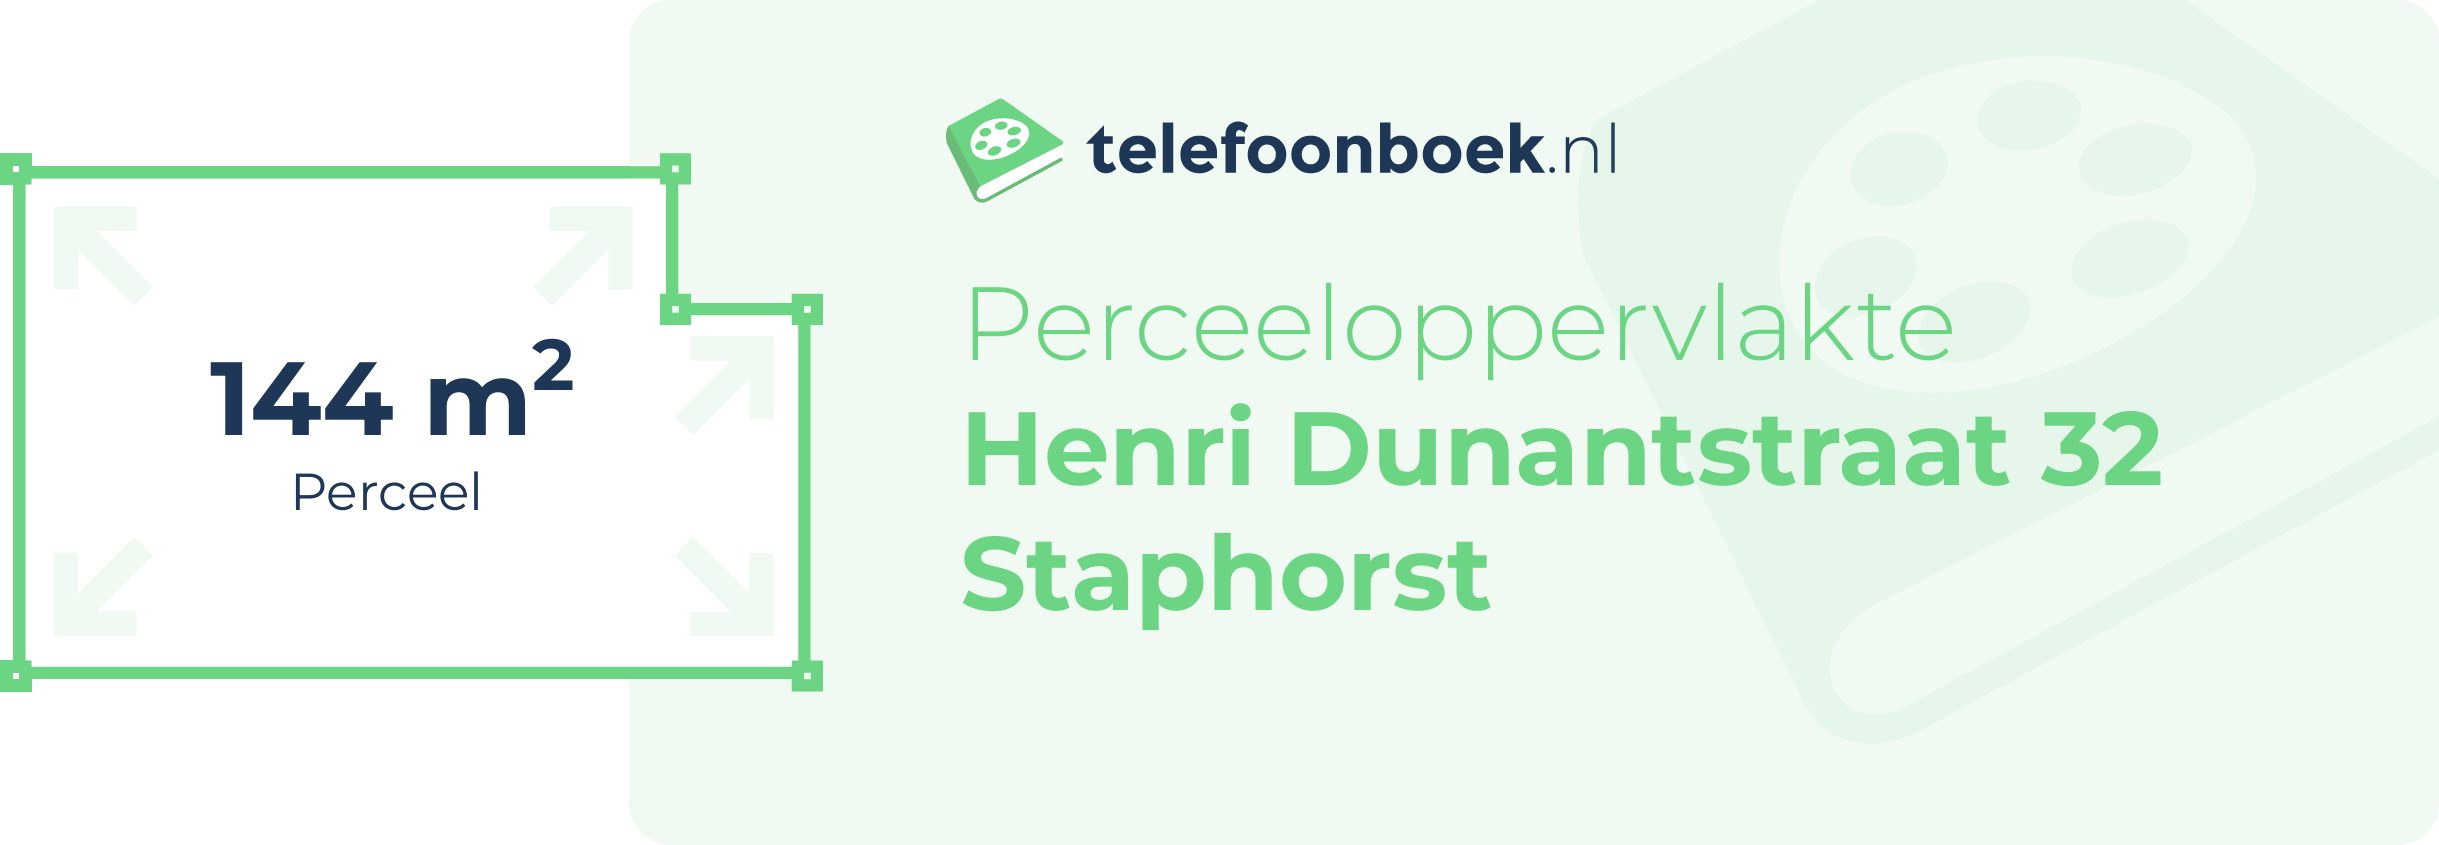 Perceeloppervlakte Henri Dunantstraat 32 Staphorst